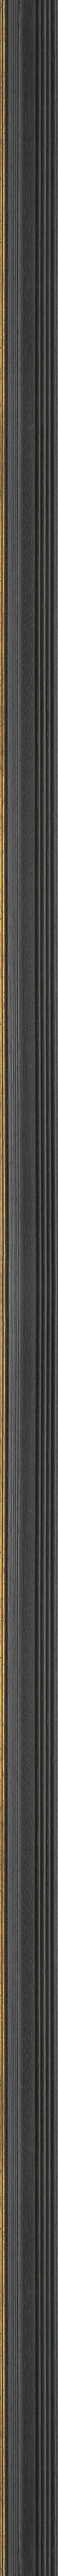 Ντεκαπέ μαύρη κορνίζα με χρυσή ρίγα frame